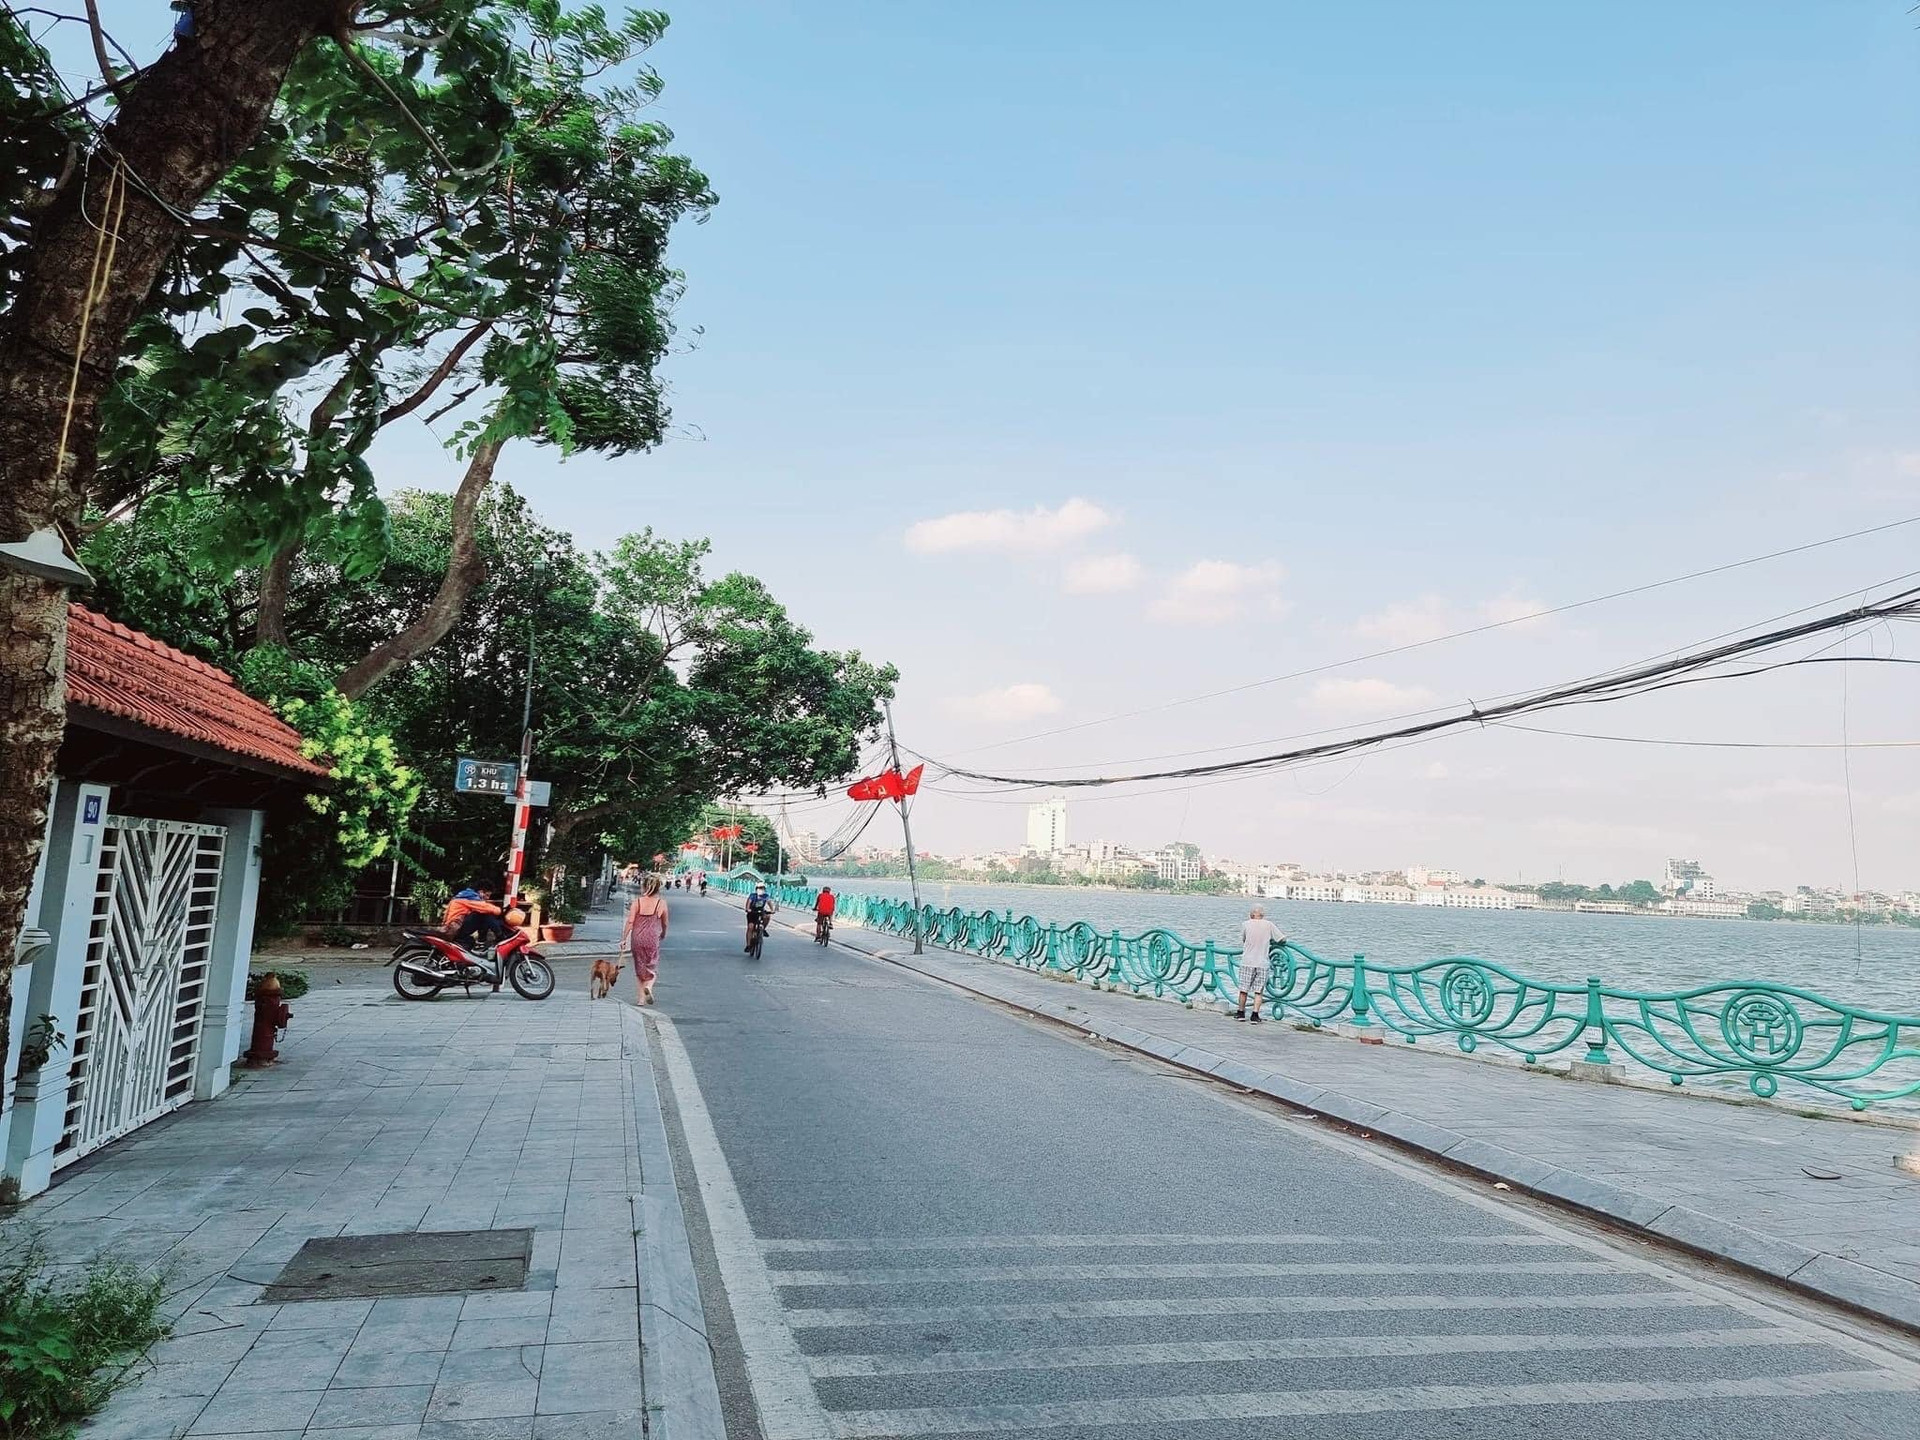 Không phải phố cổ, một khu vực tại Hà Nội có giá nhà đất lên tới hơn 1 tỷ đồng/m2, môi giới khẳng định: “Muốn làm hàng xóm ở đây phải có vài chục tỷ đồng trong tay” - Ảnh 3.